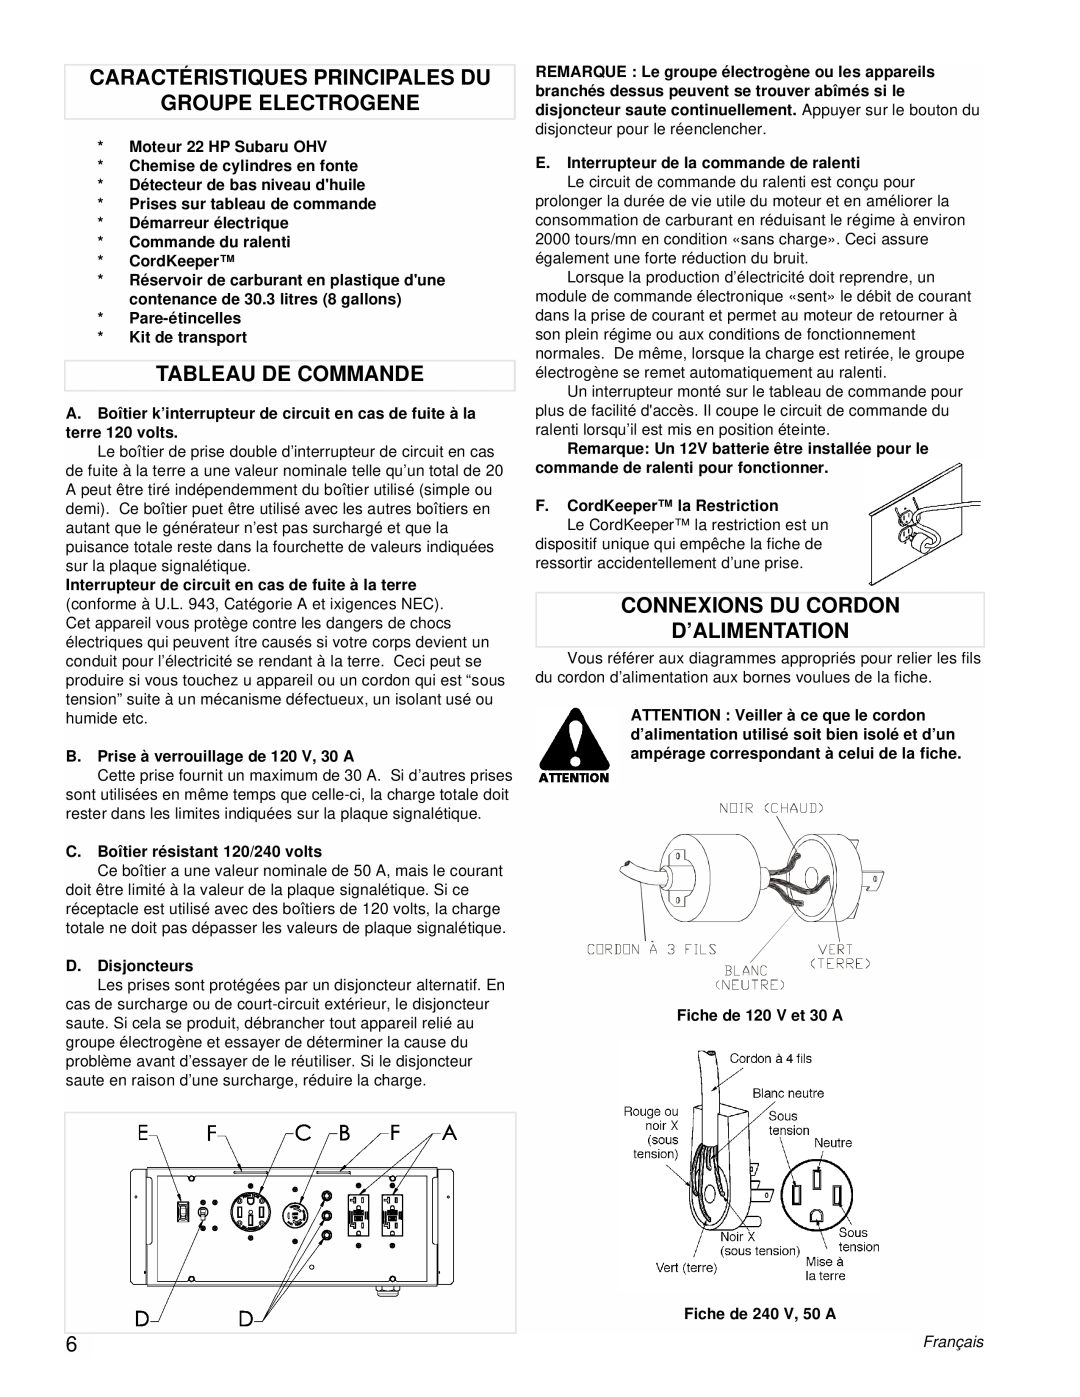 Powermate PMC601200 manual Caractéristiques Principales Du Groupe Electrogene, Tableau De Commande, Français 